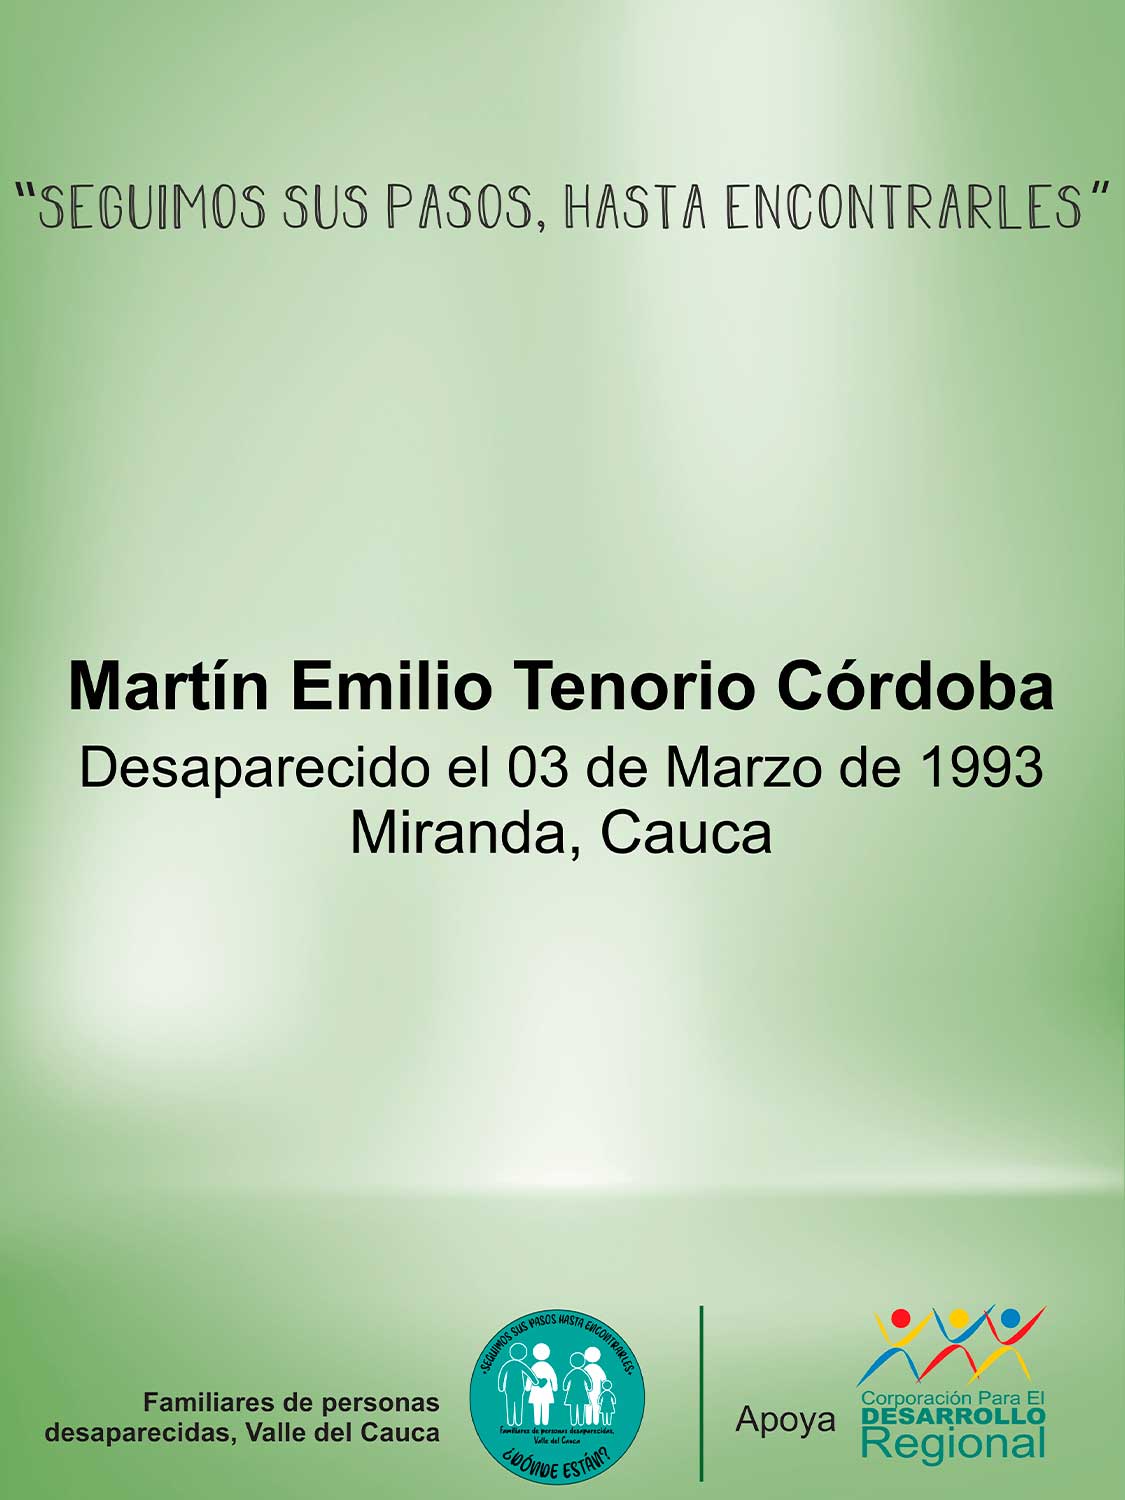 Martín Emilio Tenorio Córdoba